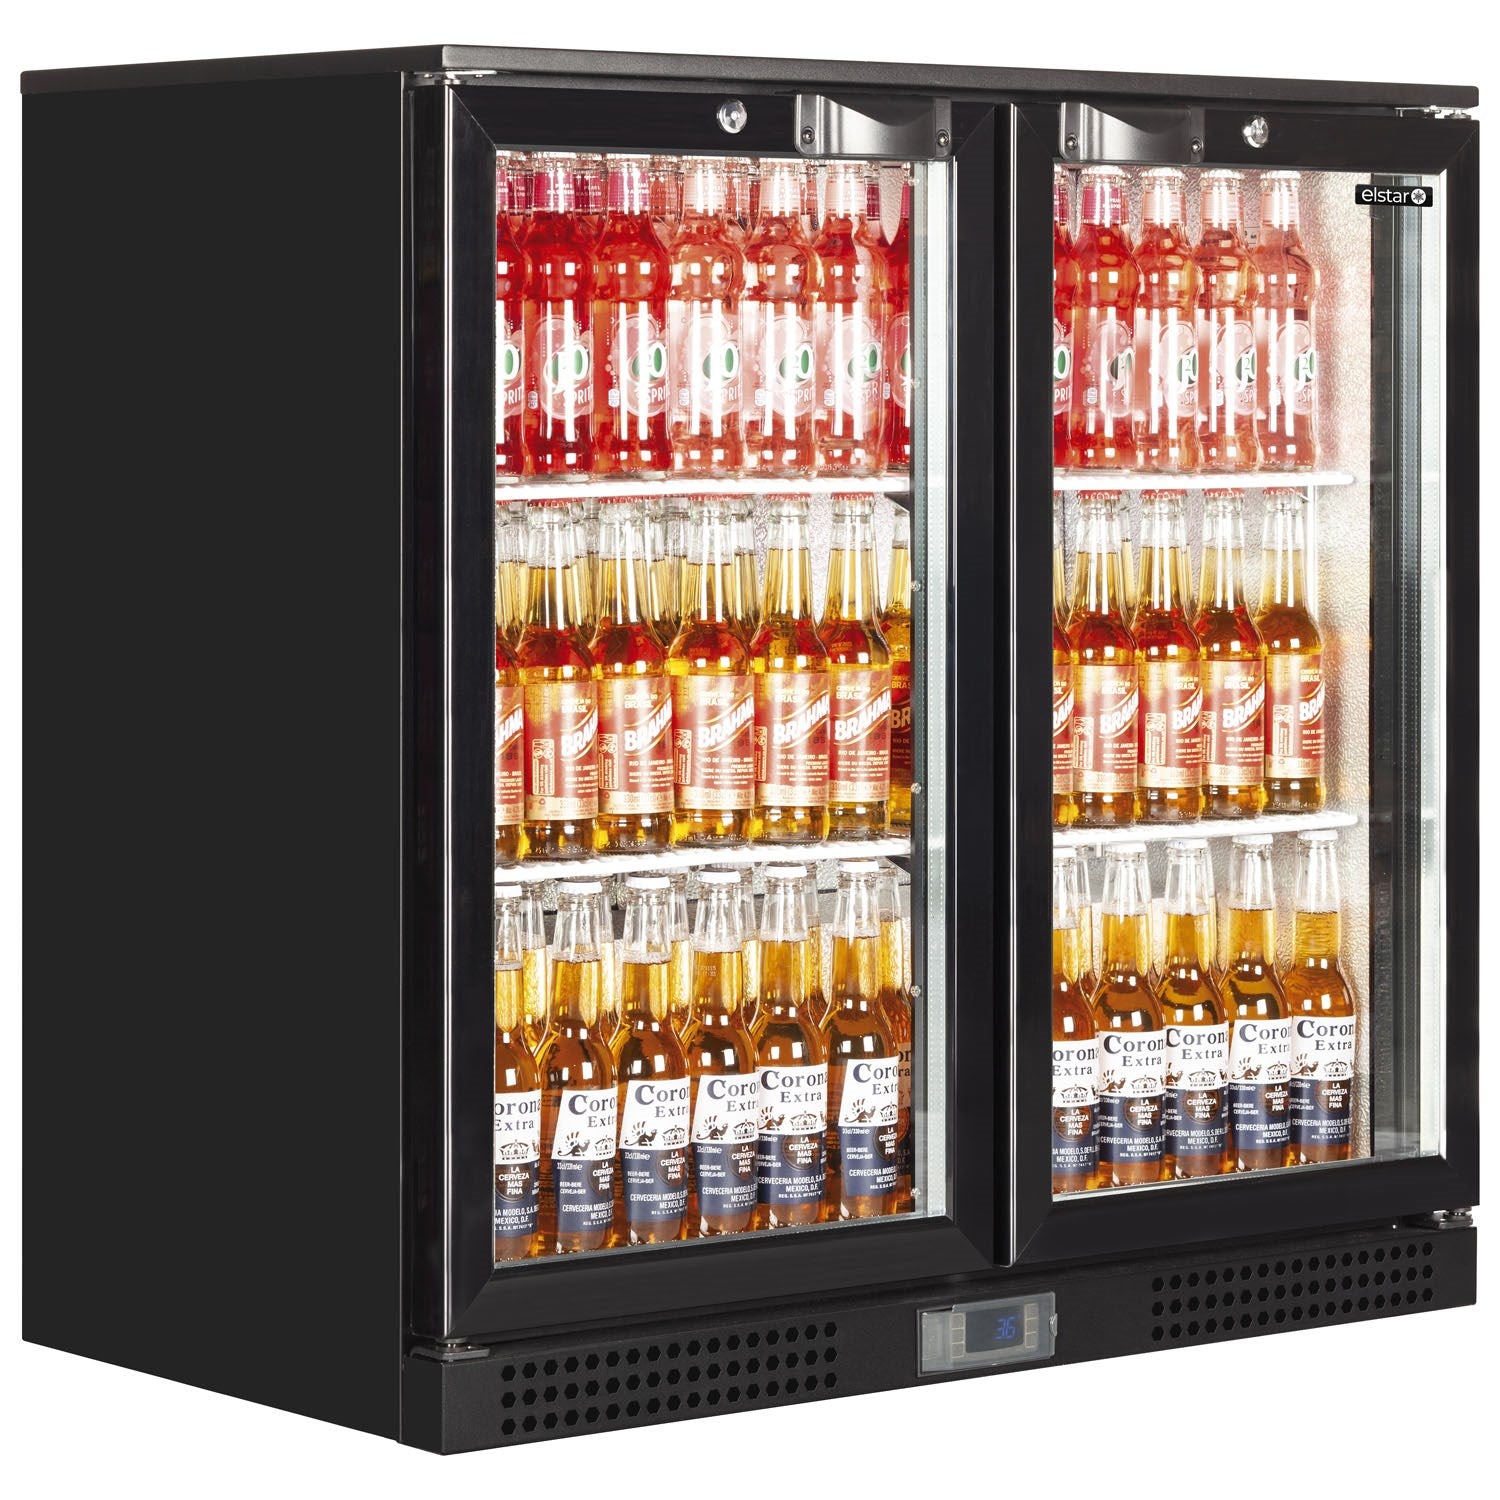 Elstar EM231 Range Back Bar fridge sliding door.Product ref:00805.MODEL:EM231S Black, 🚚 3-5 Days Delivery